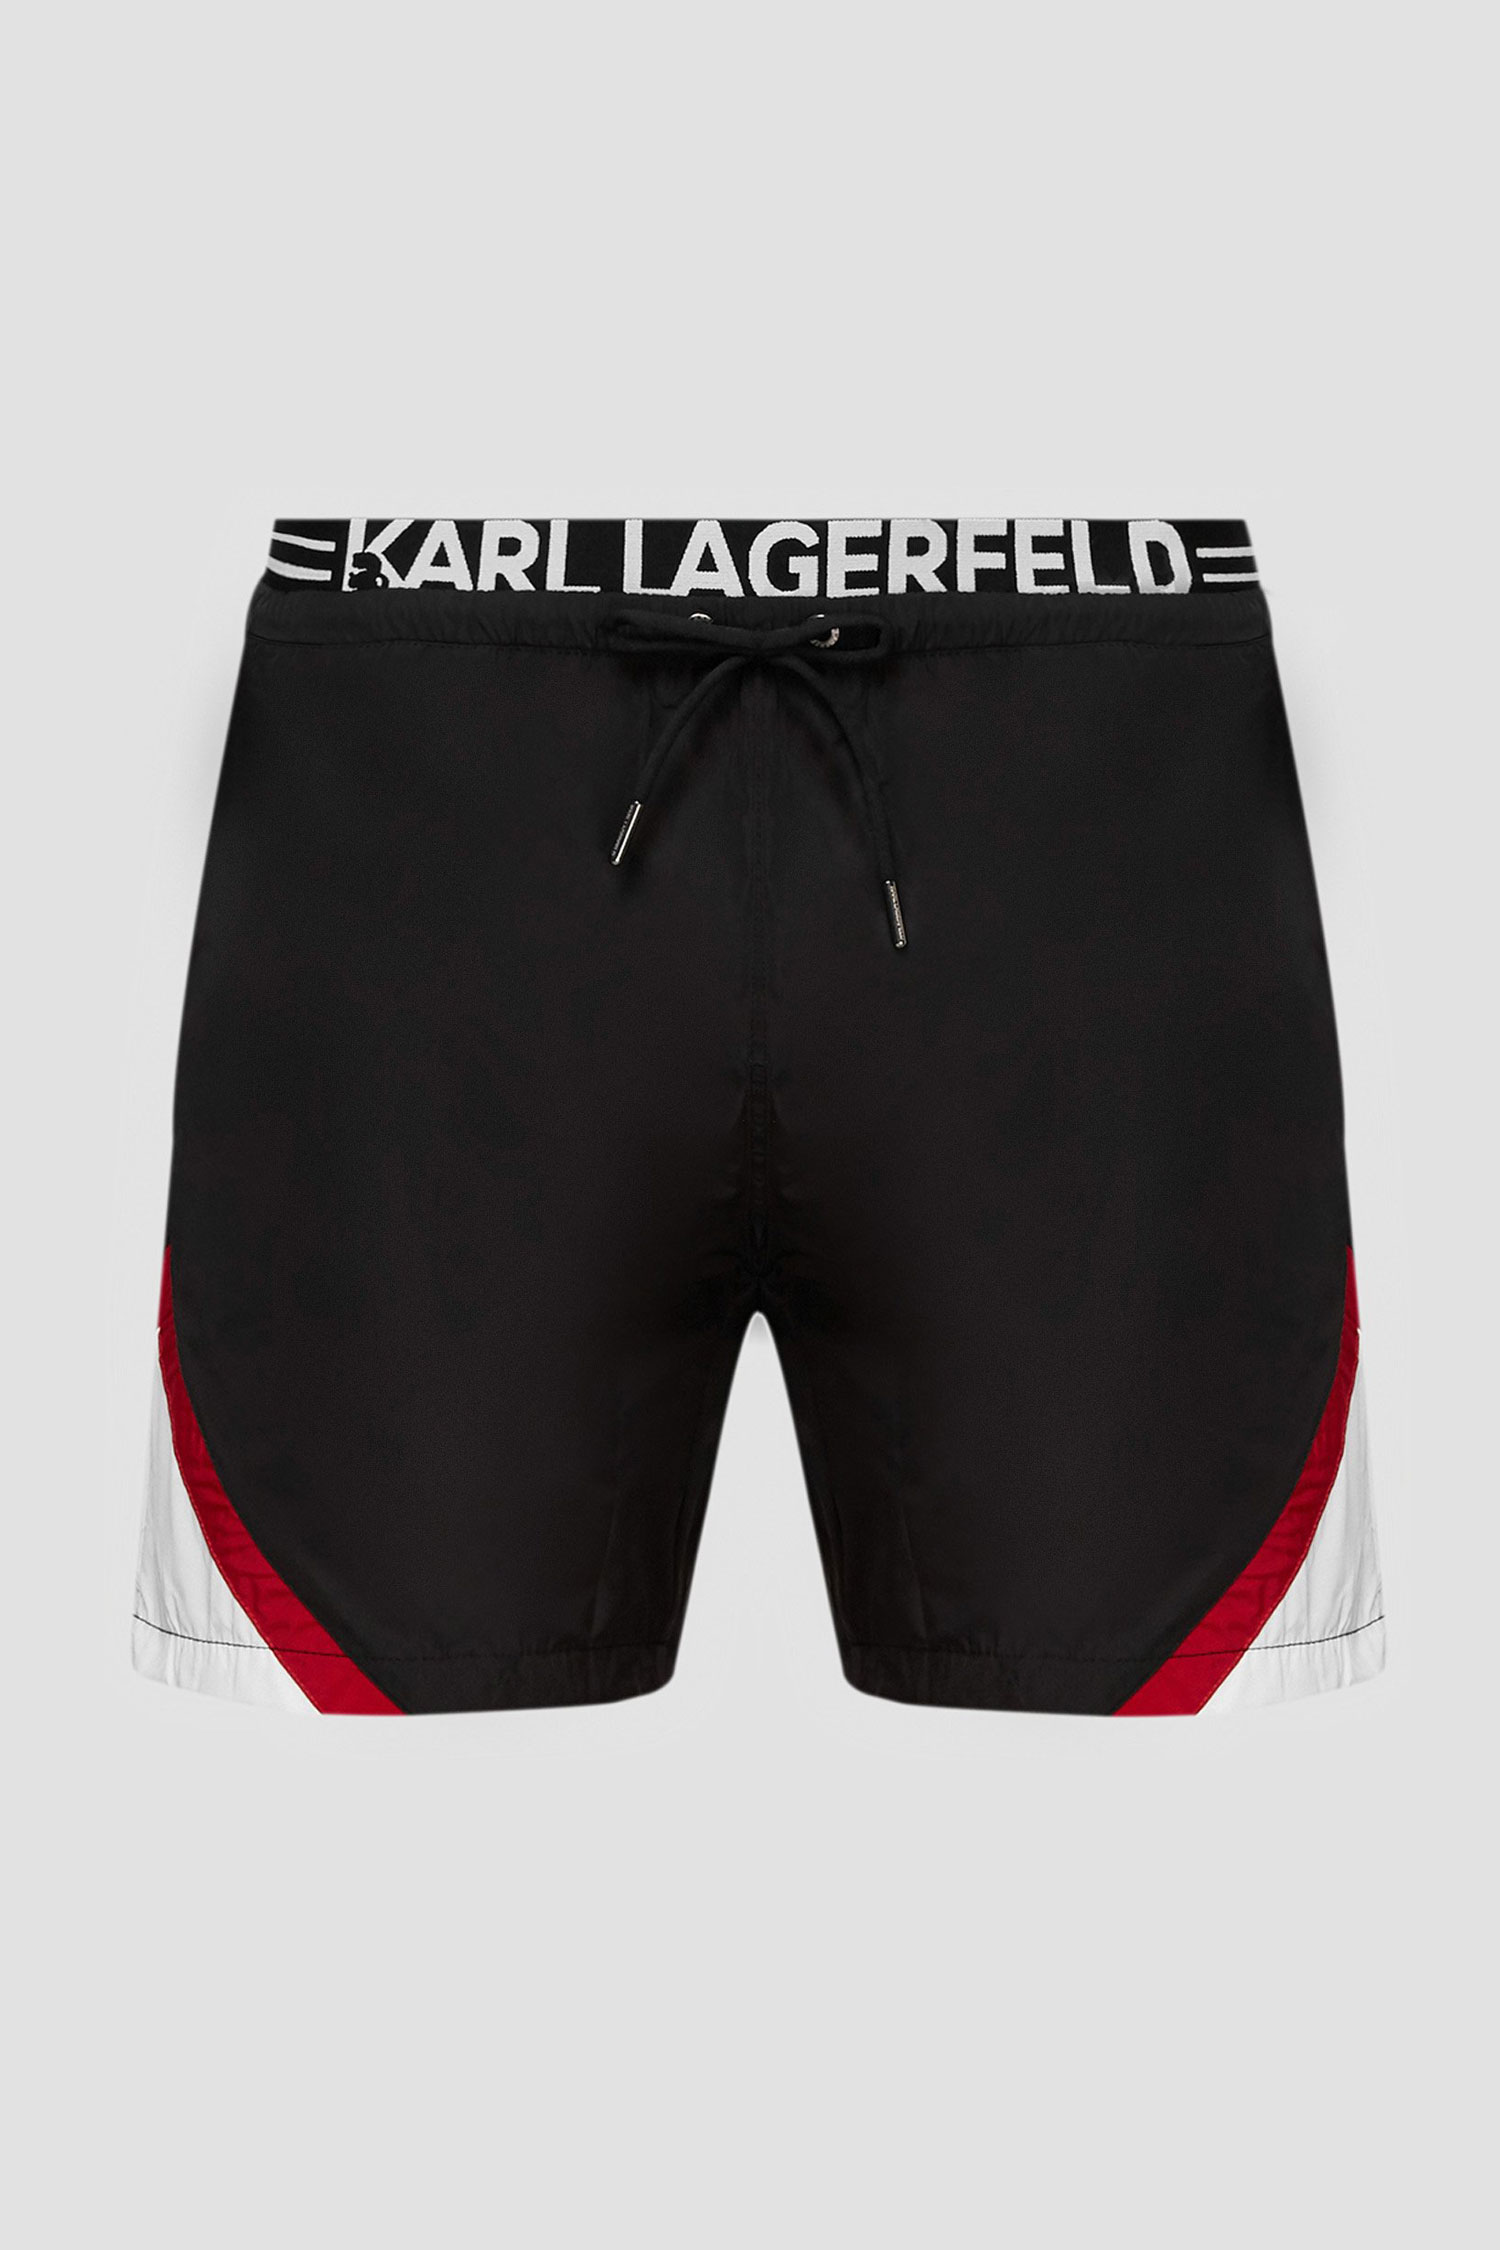 Чоловічі чорні плавальні шорти Karl Lagerfeld KL20MBM05;Black